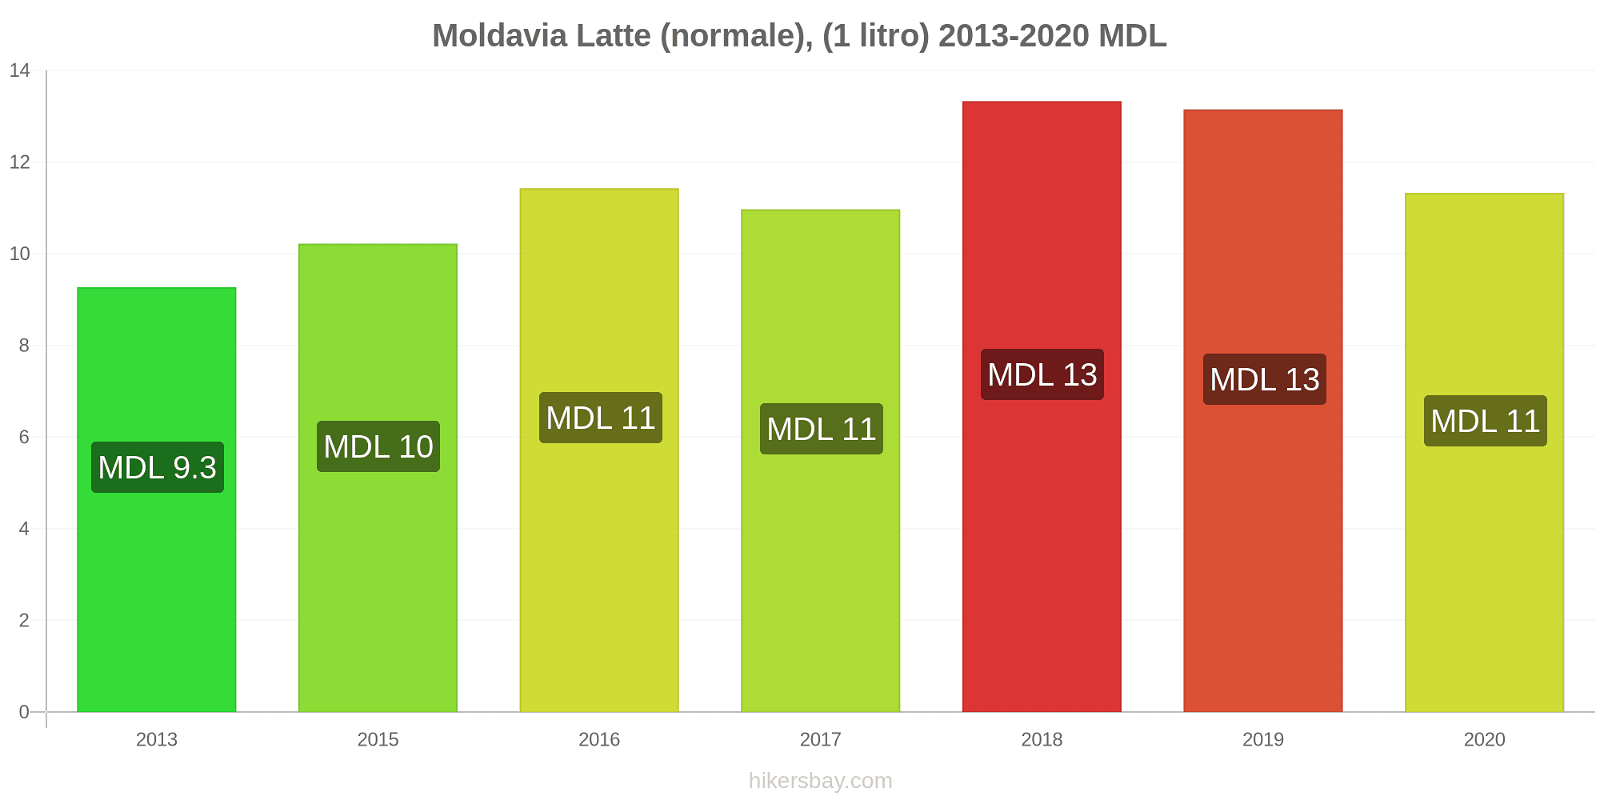 Moldavia variazioni di prezzo Latte (1 litro) hikersbay.com